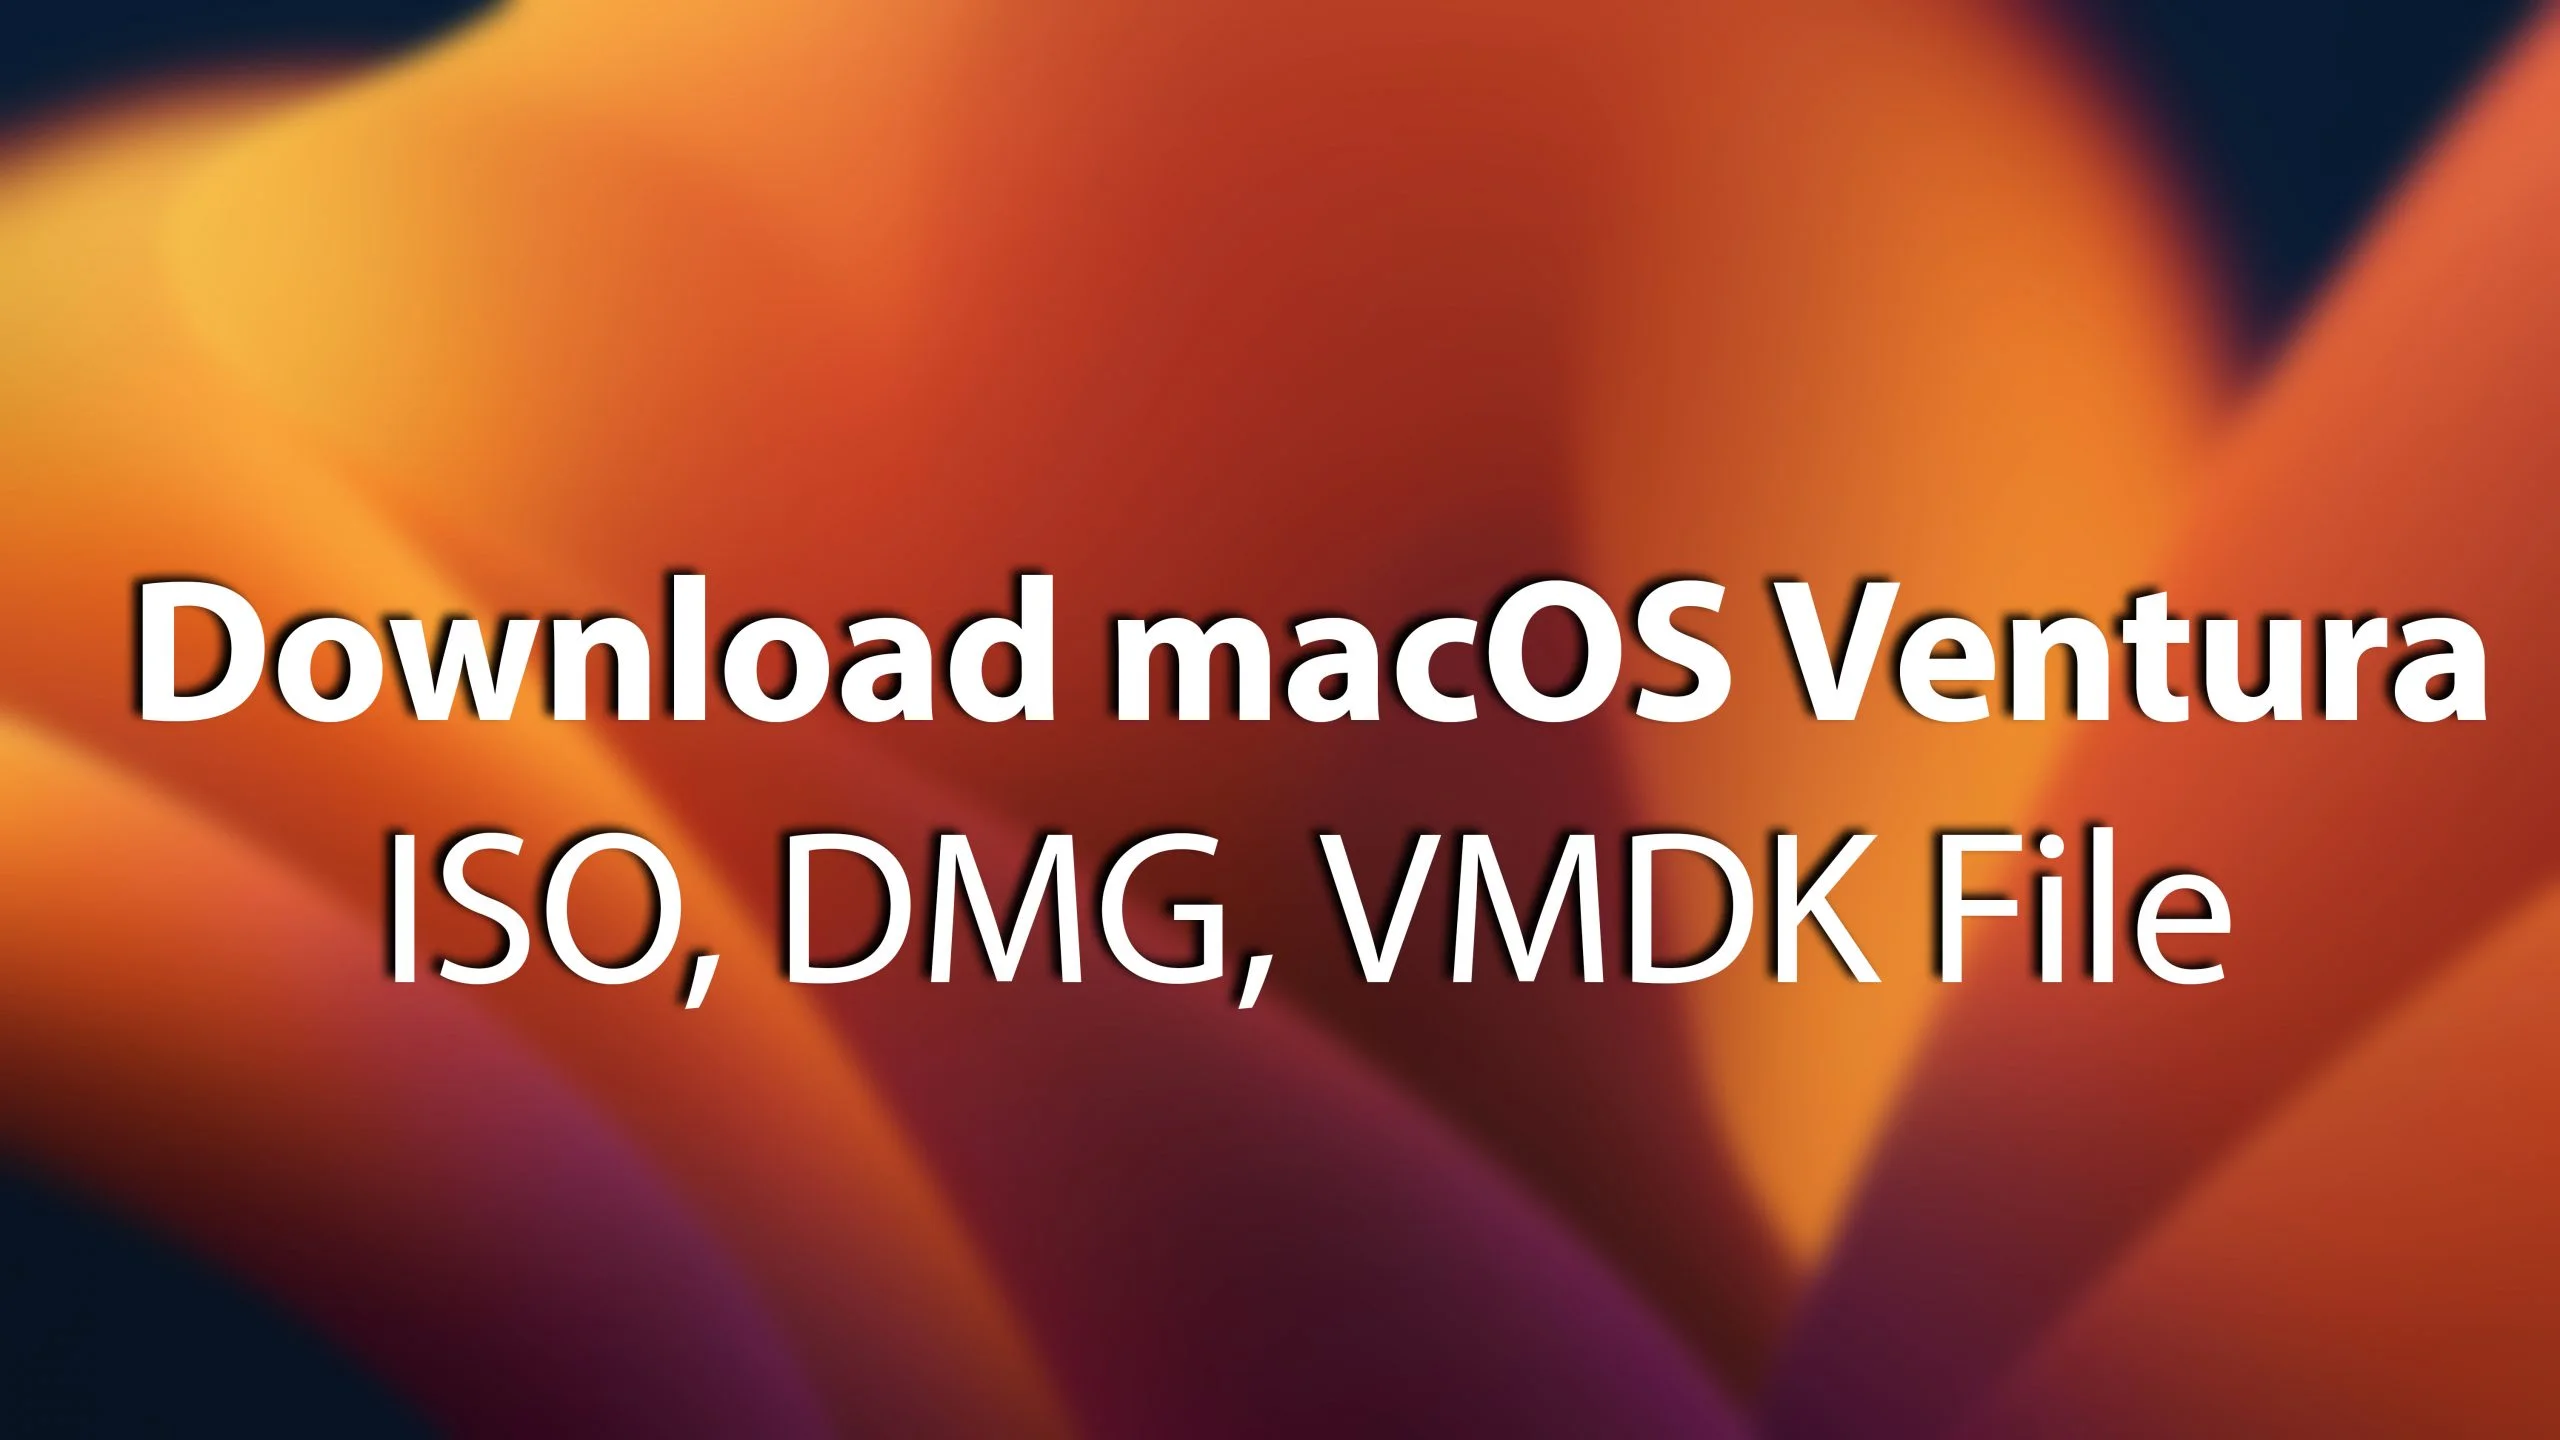 Download macOS Ventura ISO, DMG, VMDK File